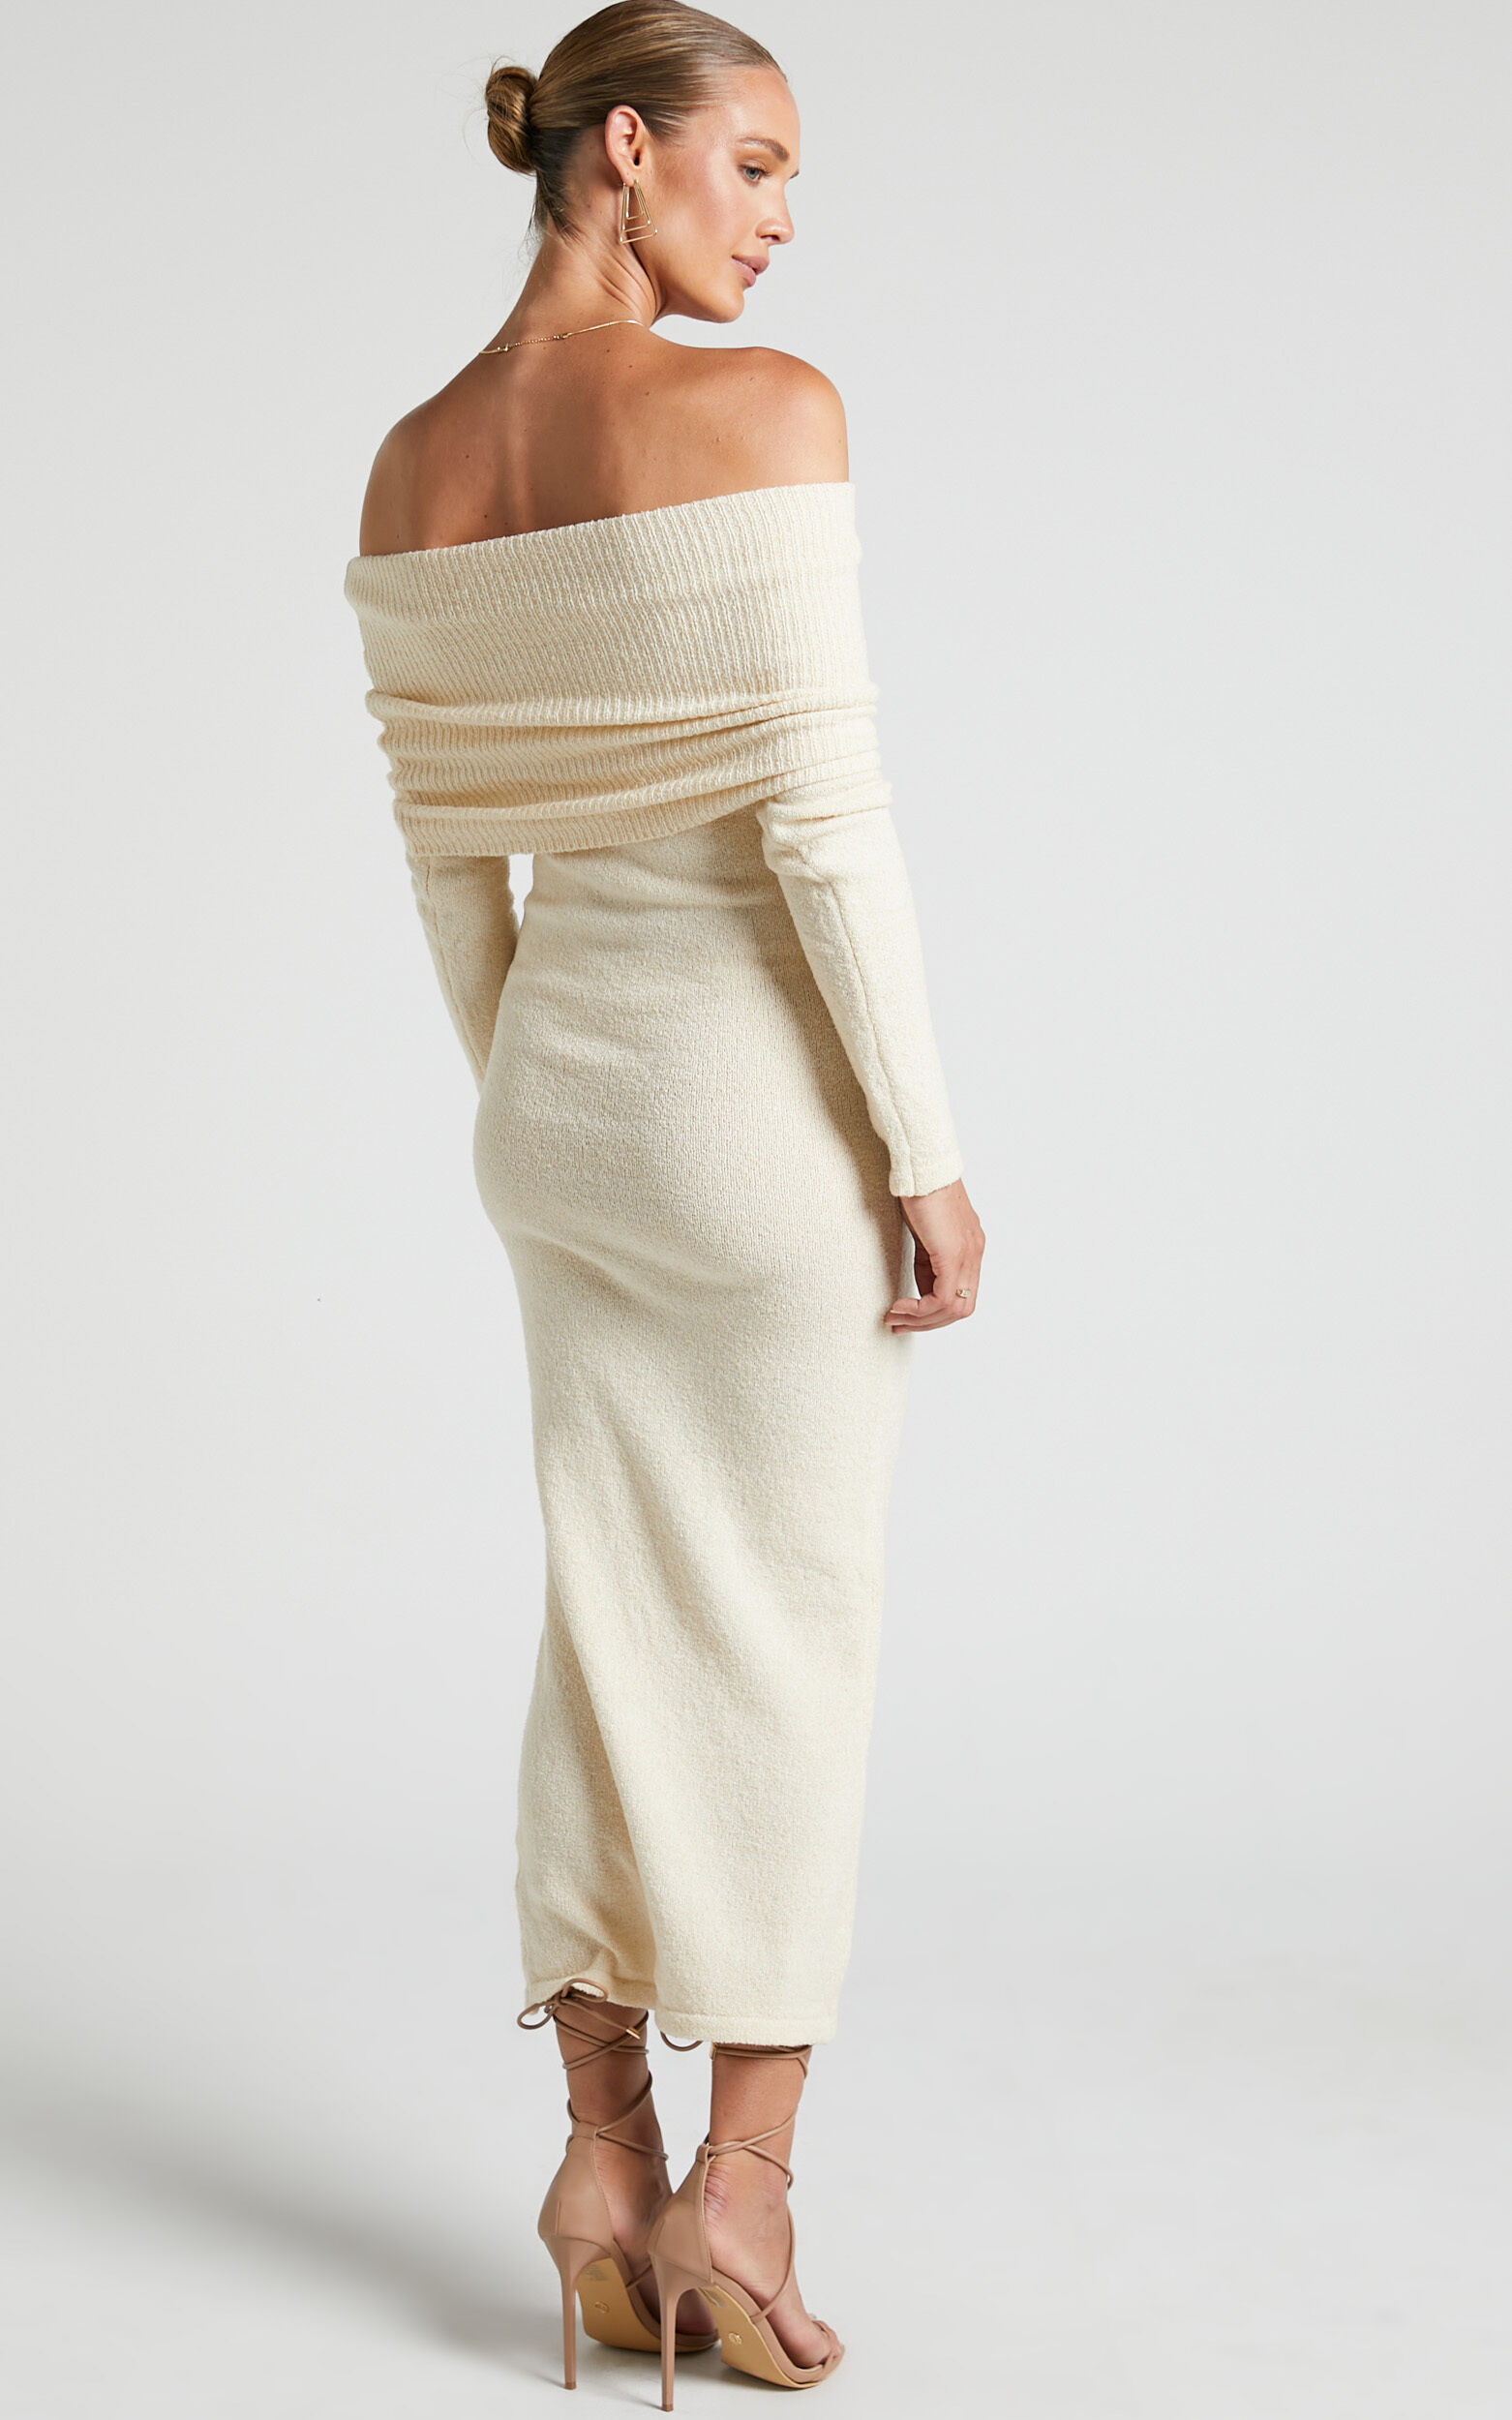 Ehmie Midi Dress - Knit Folded Off Shoulder Long Sleeve Dress in